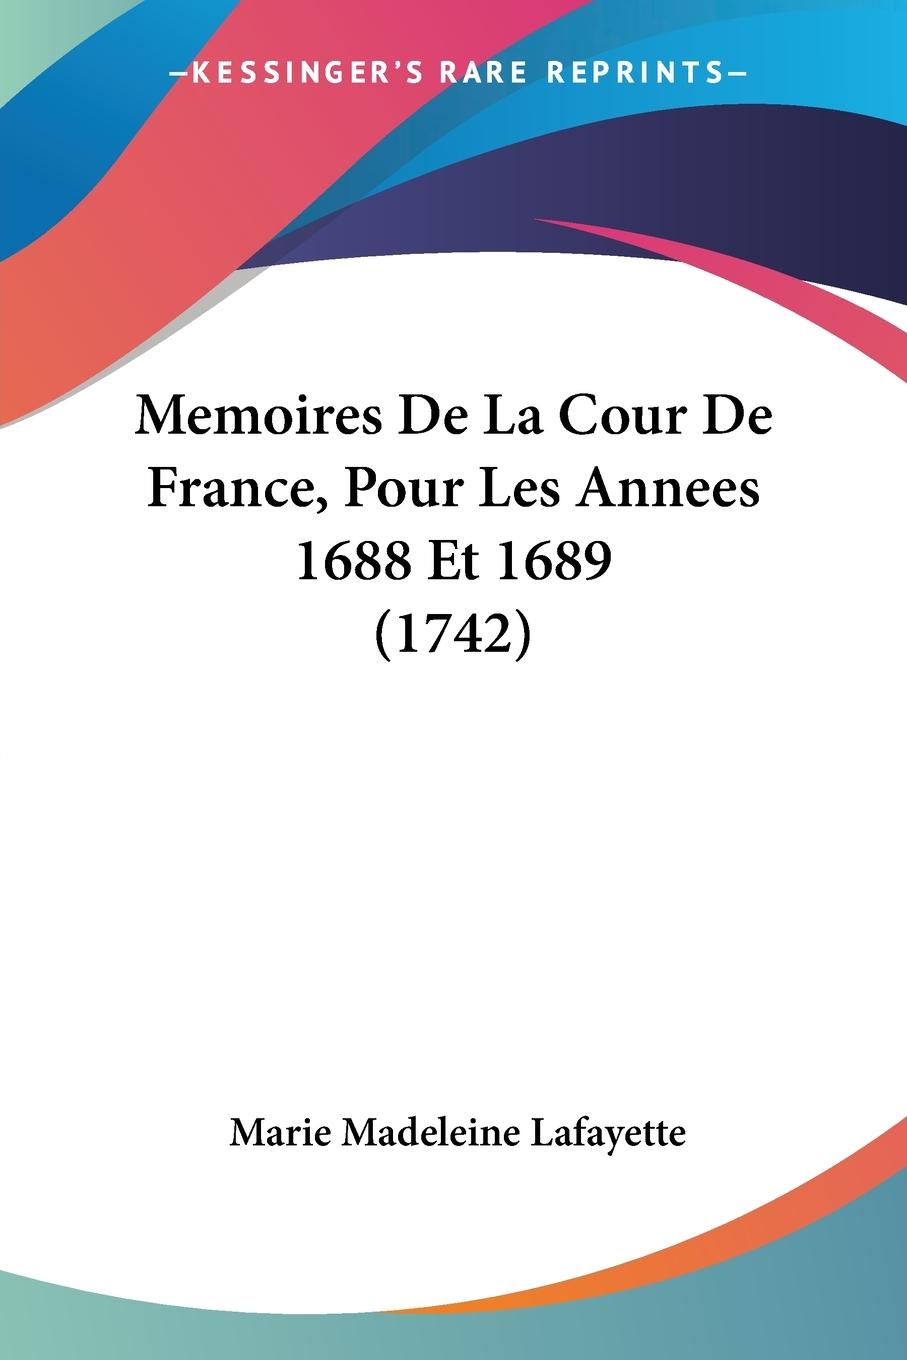 Memoires De La Cour De France, Pour Les Annees 1688 Et 1689 (1742) - Lafayette, Marie Madeleine